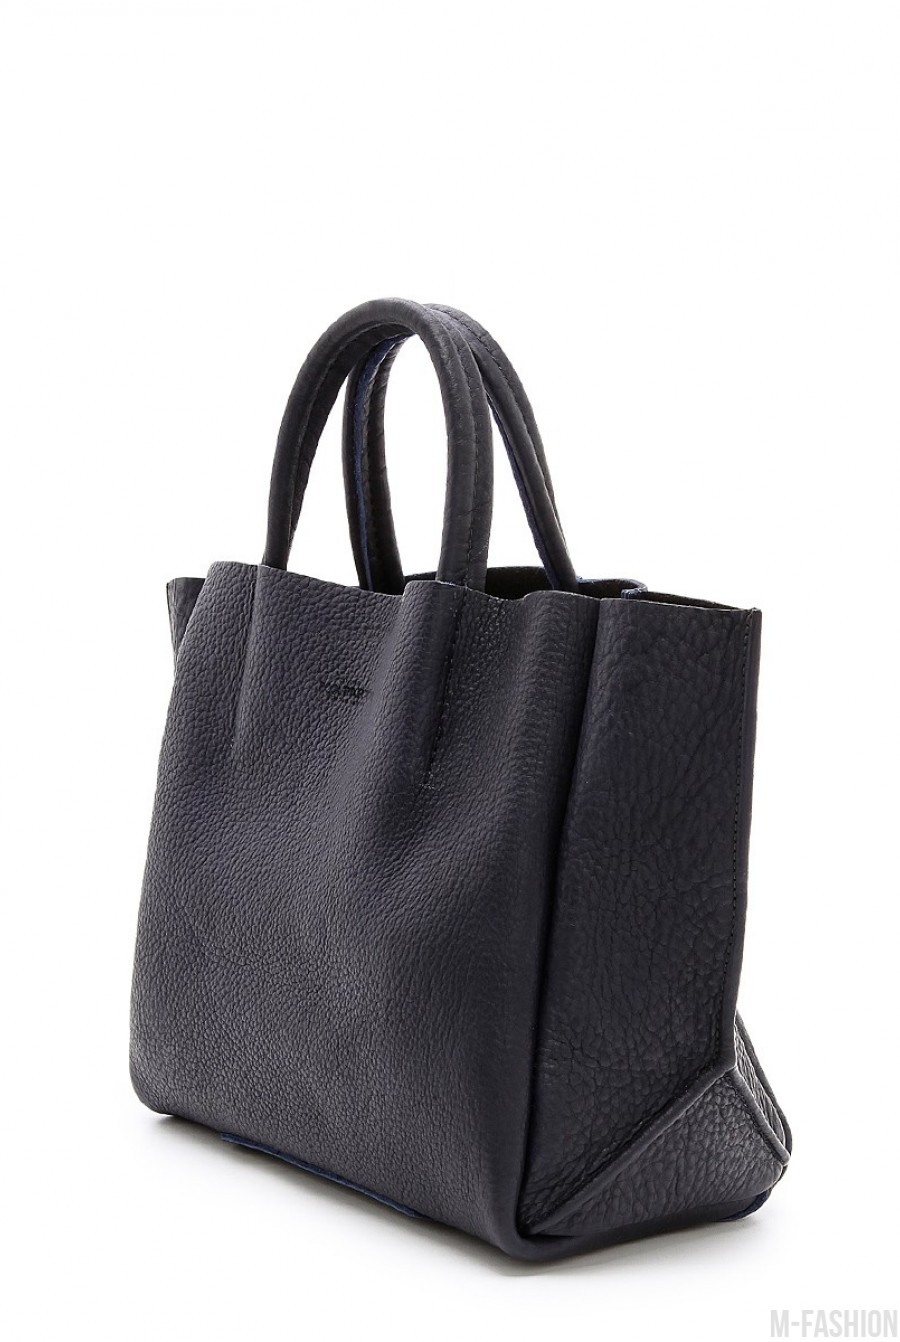 Кожаная черная сумка Soho классического дизайна- Фото 2